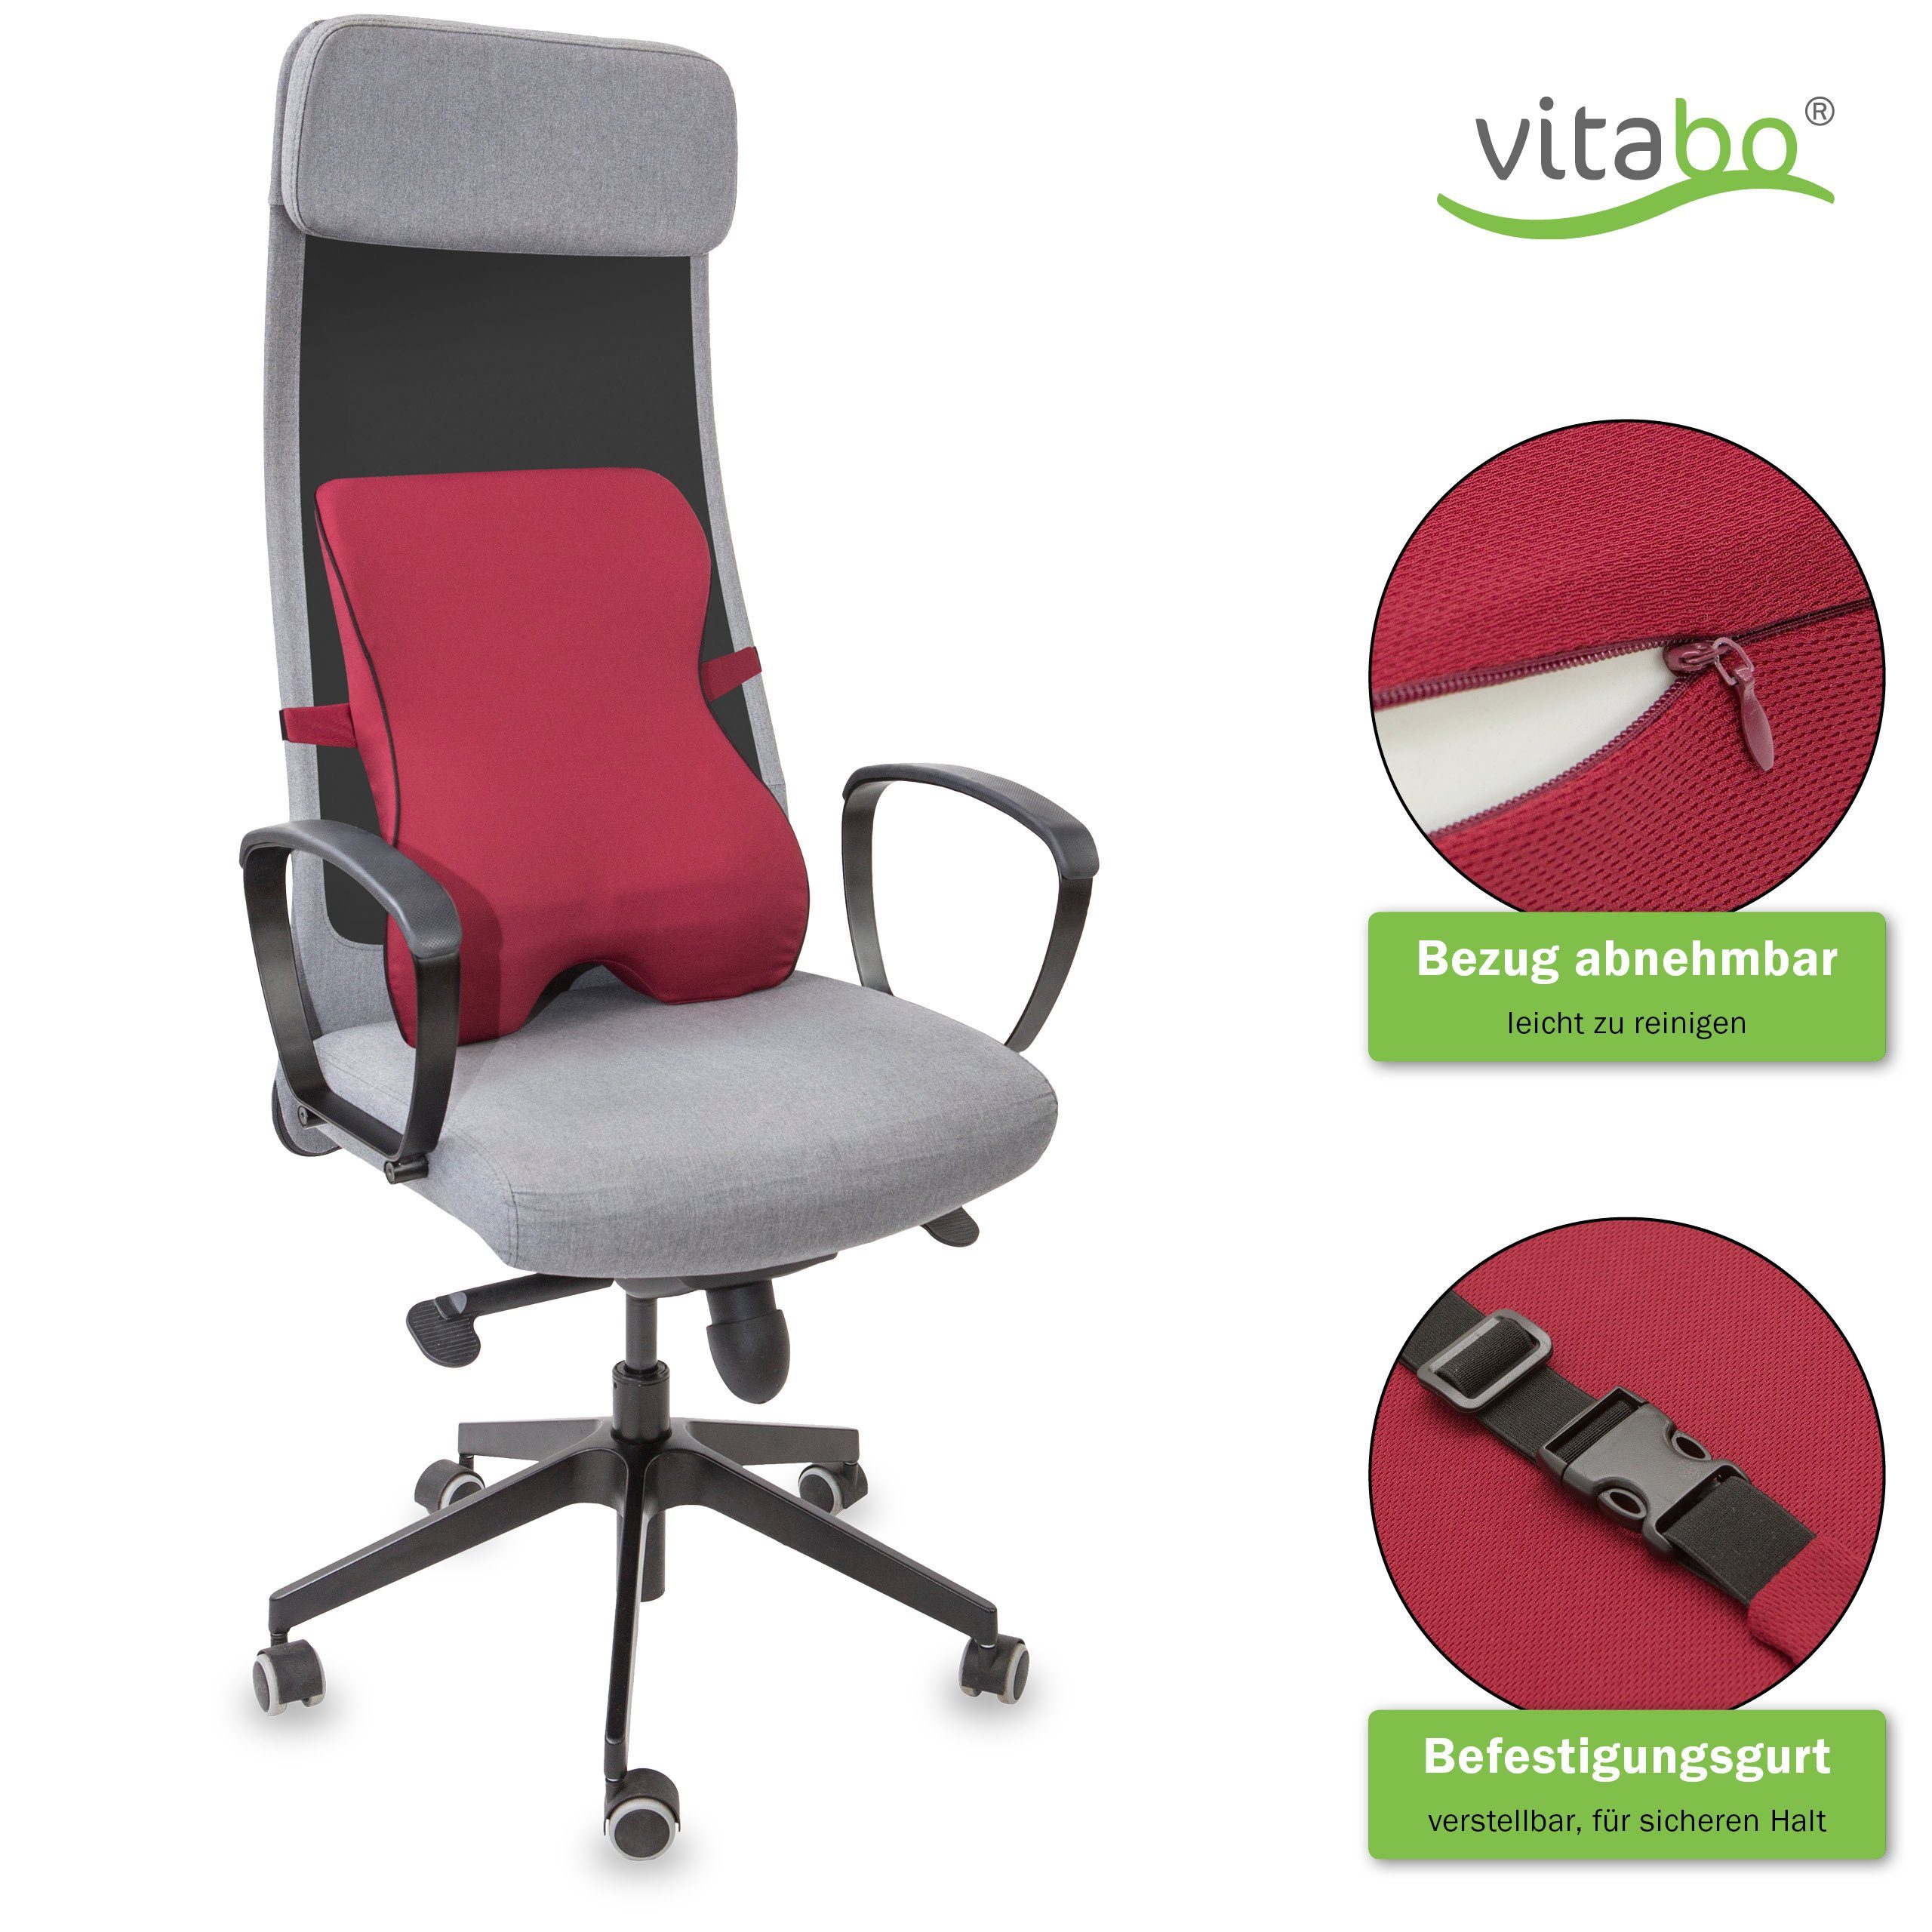 Vitabo Rückenkissen Vitabo Rückenkissen mit Memory-Funktion – ergonomisches  Lendenkissen I Lordosenstütze Rückenstütze für Büro Auto (Rot), 1-tlg.